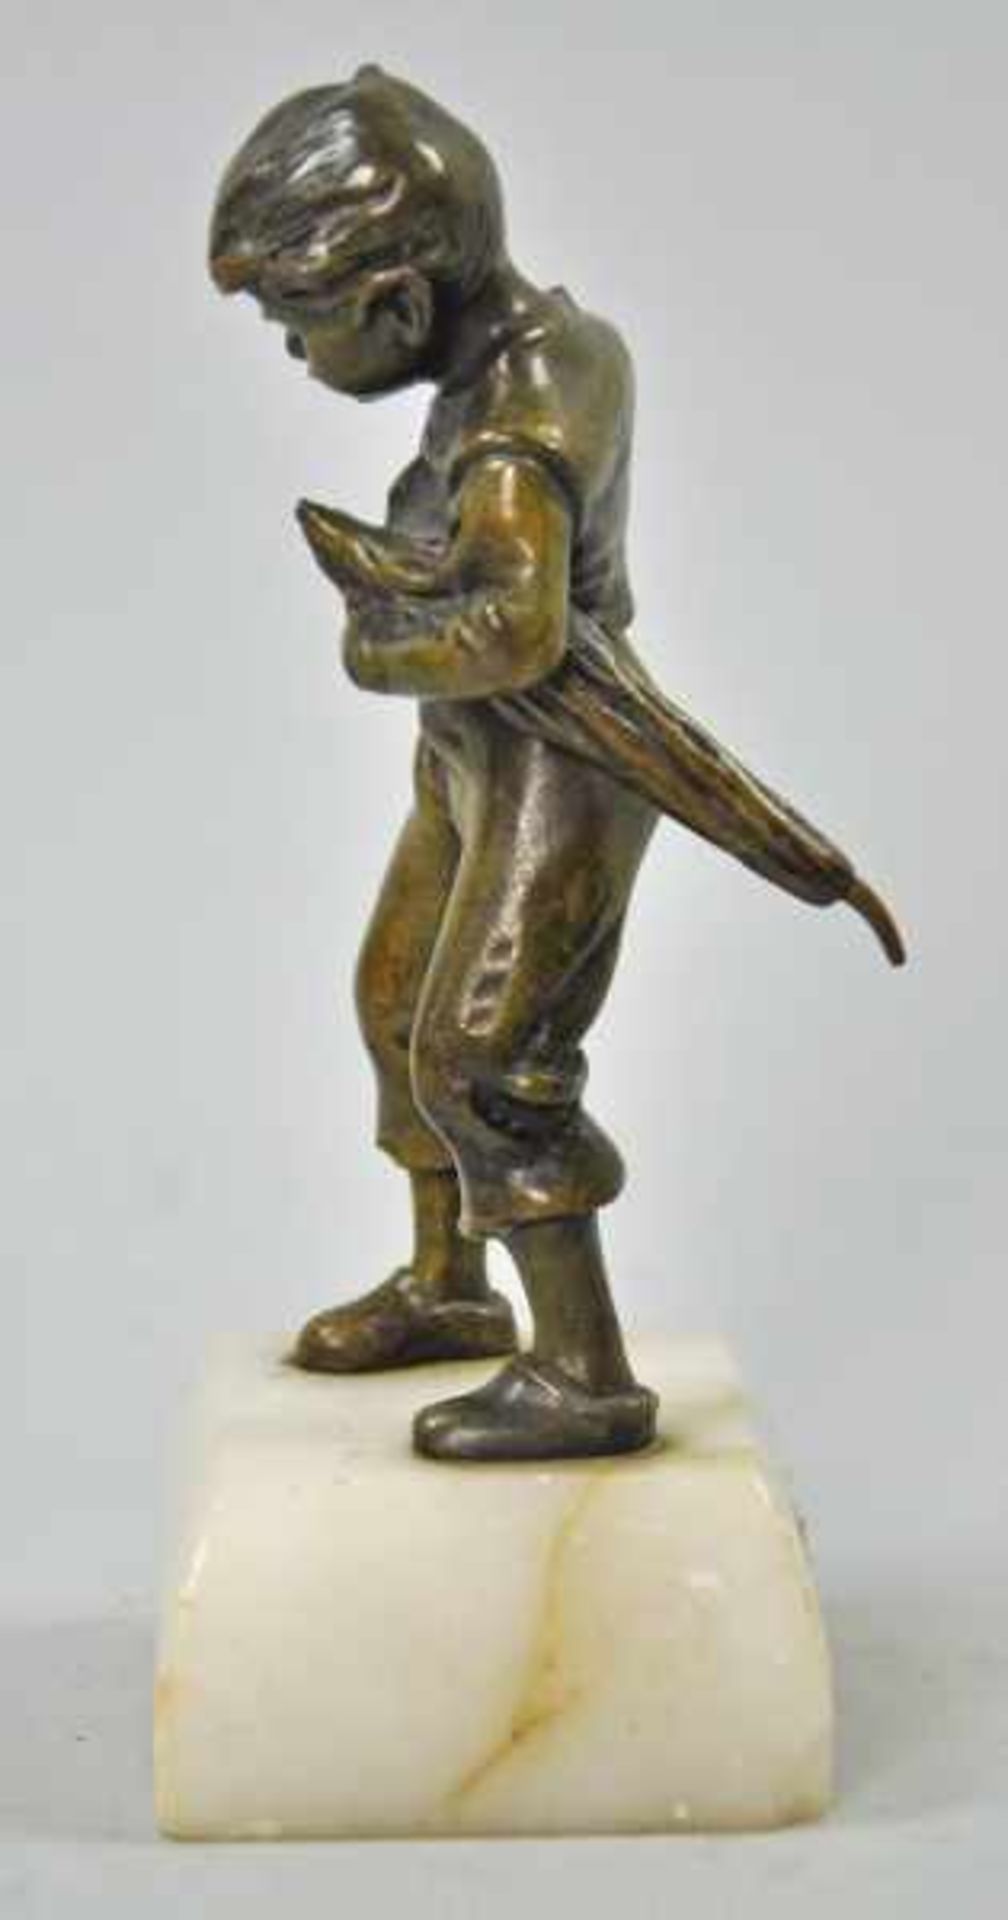 JUNGE mit Schirm, abgebrochener Griff, Bronze goldbraun patiniert, auf rechteckigem weißen - Bild 3 aus 4